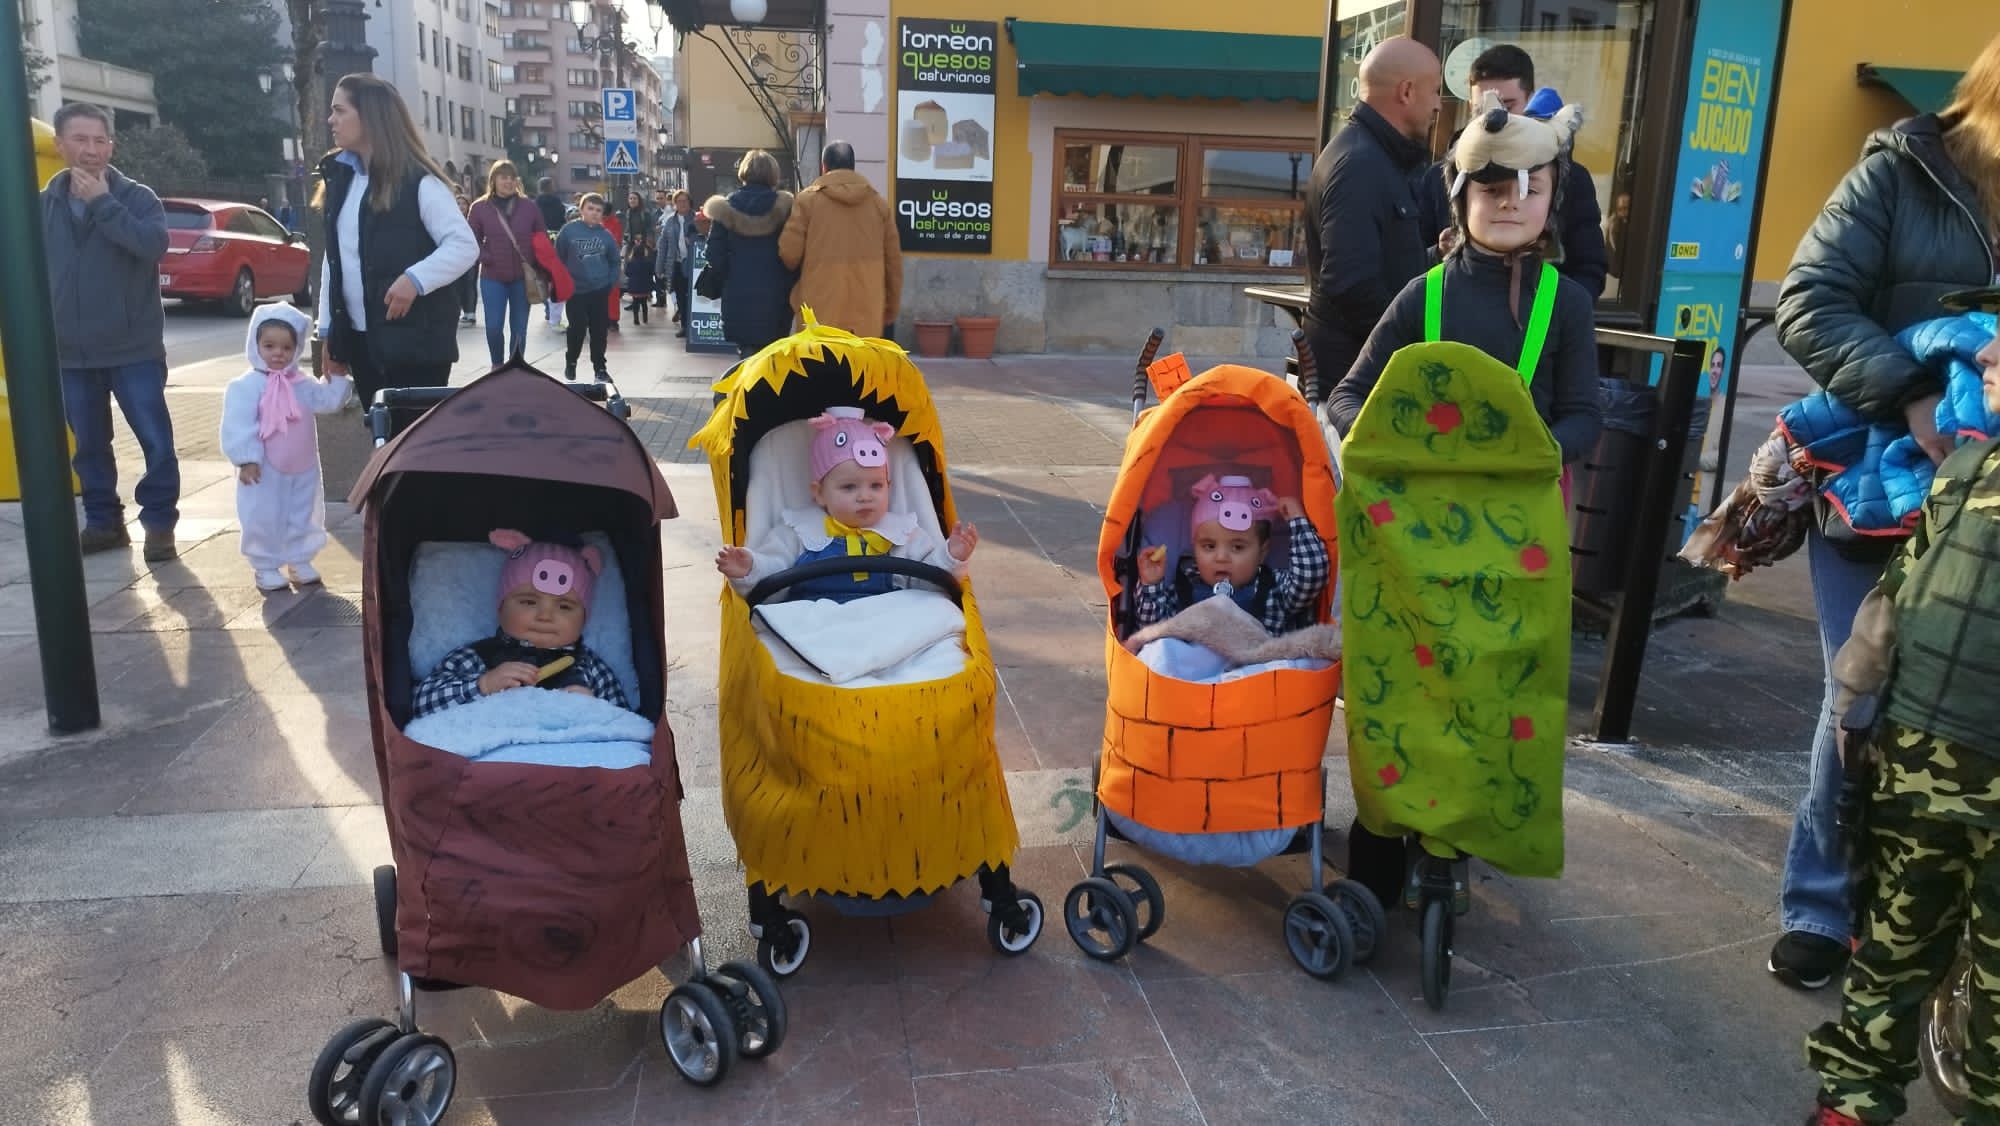 El Carnaval llega a los más pequeños de Cangas de Onís